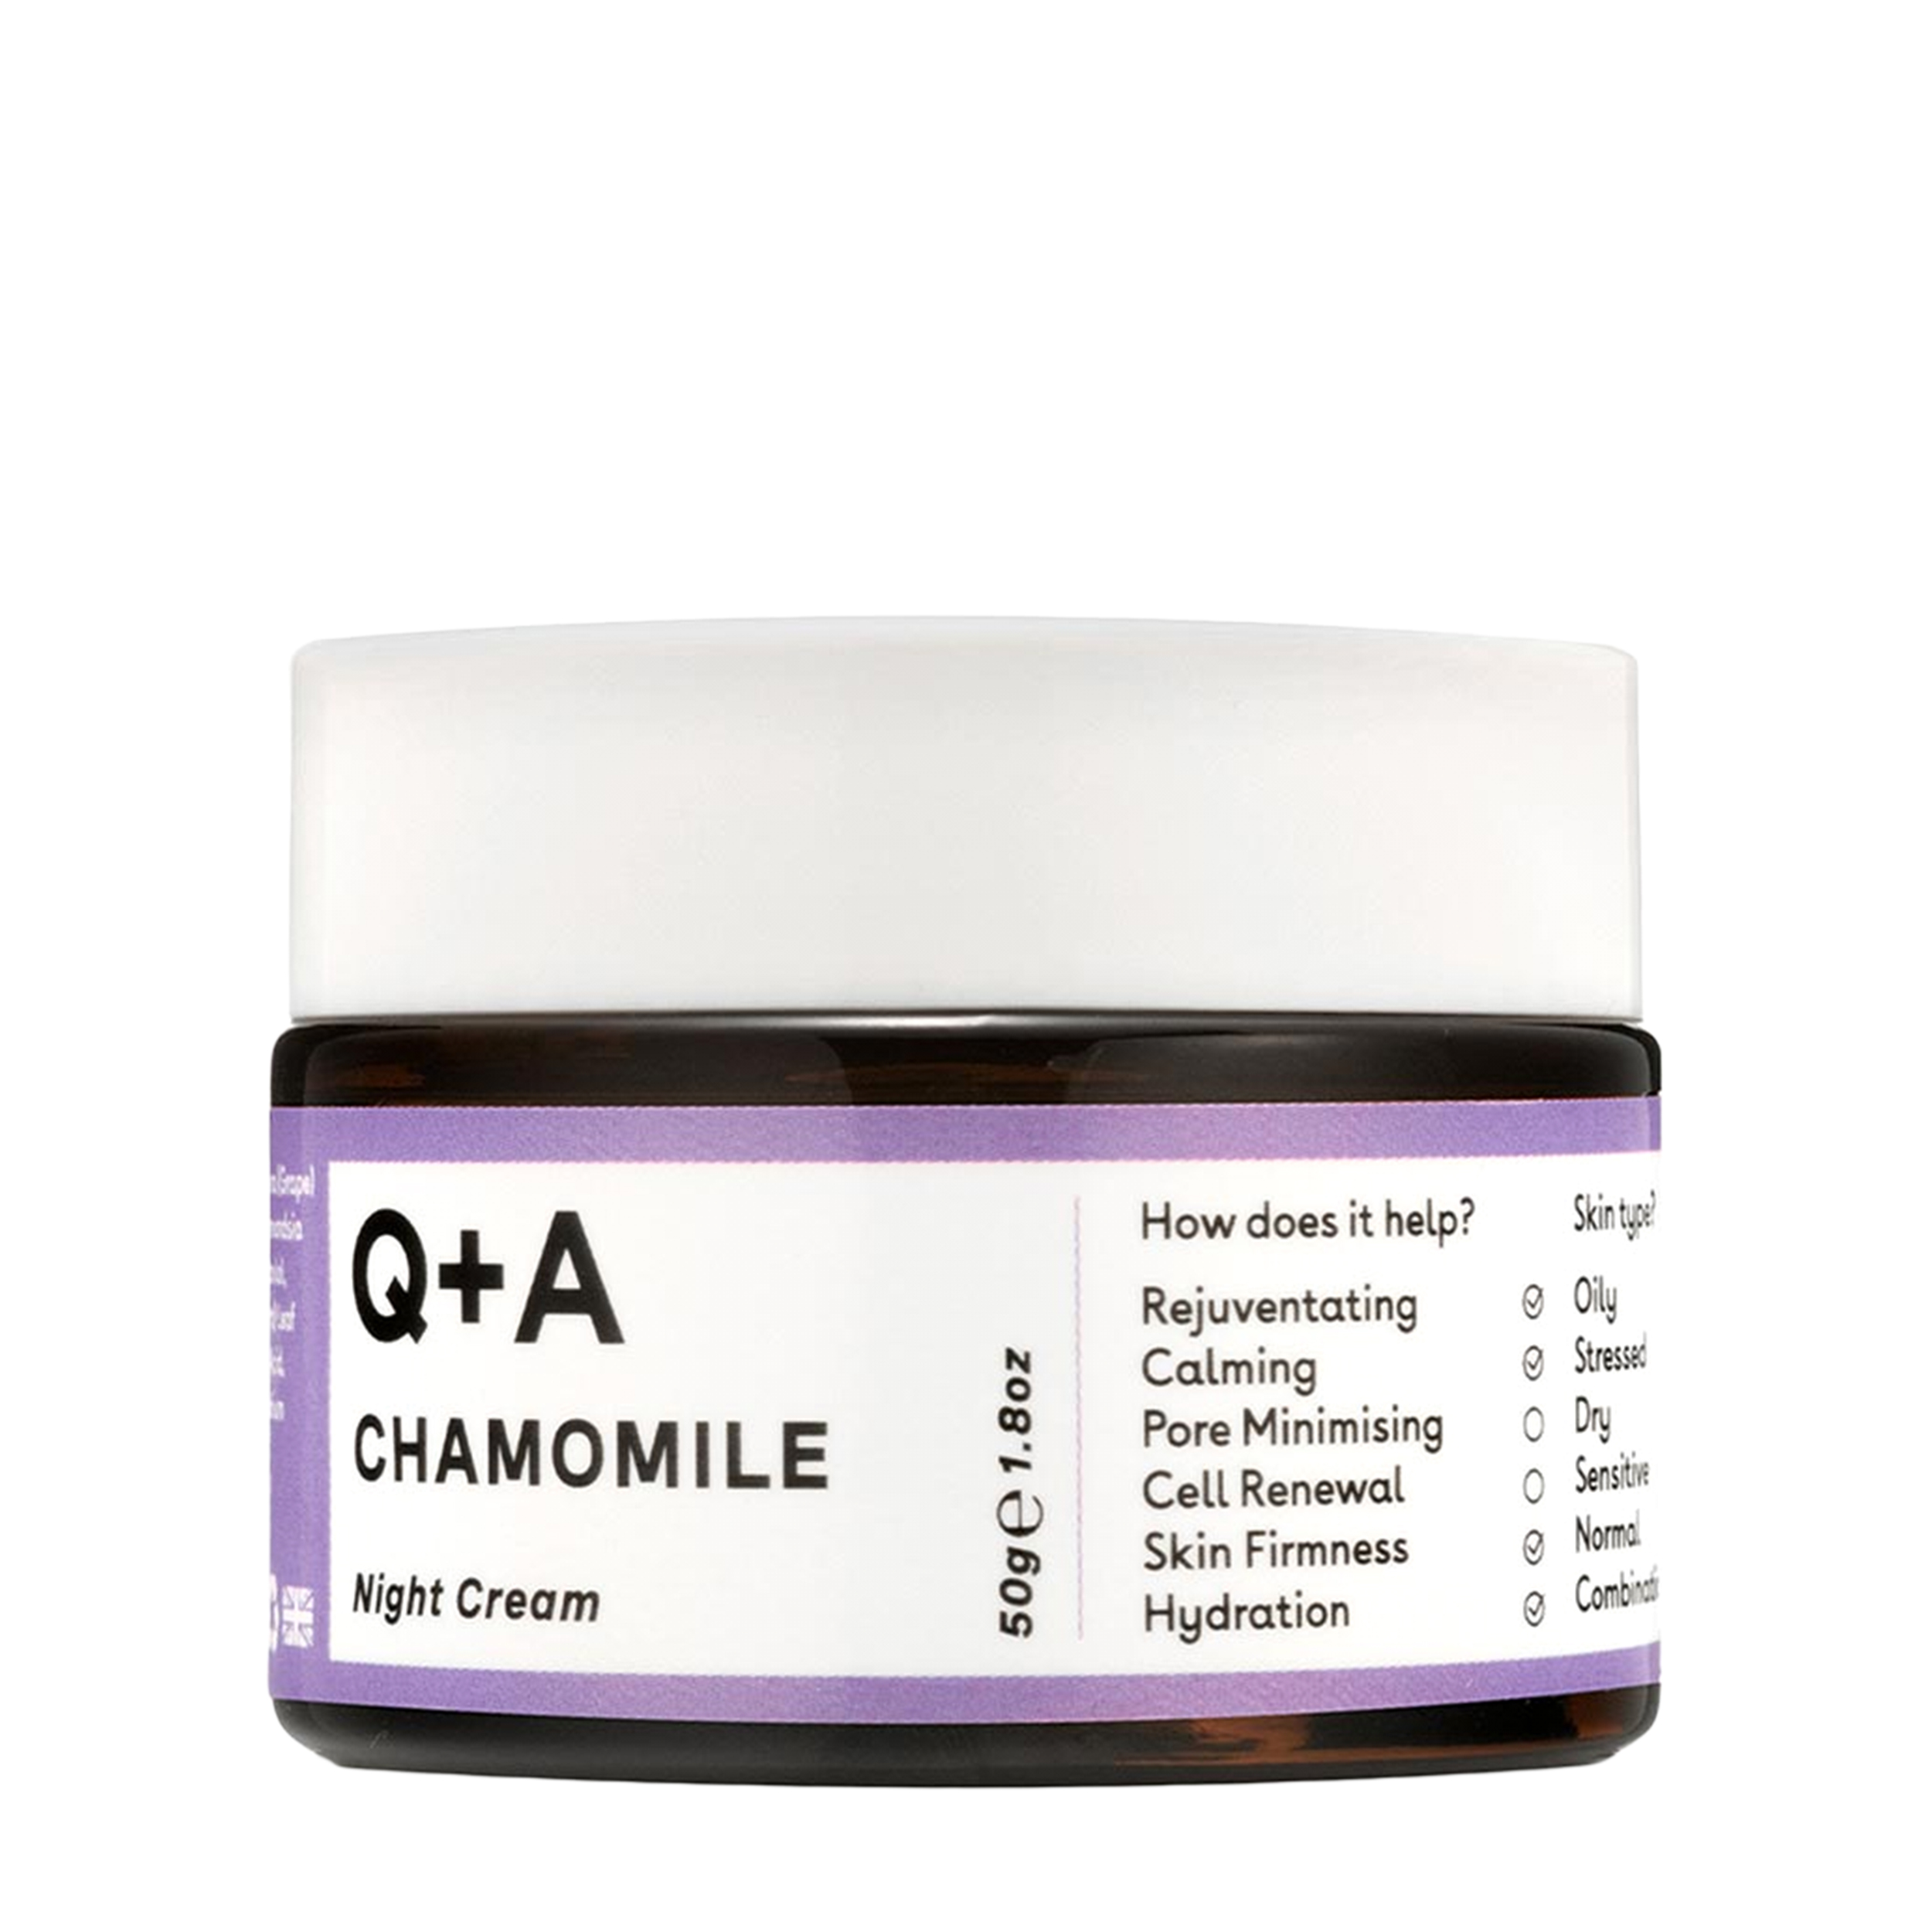 Q+A Q+A Успокаивающий ночной крем для лица Chamomile 50 гр QACHAMOMILE - фото 1